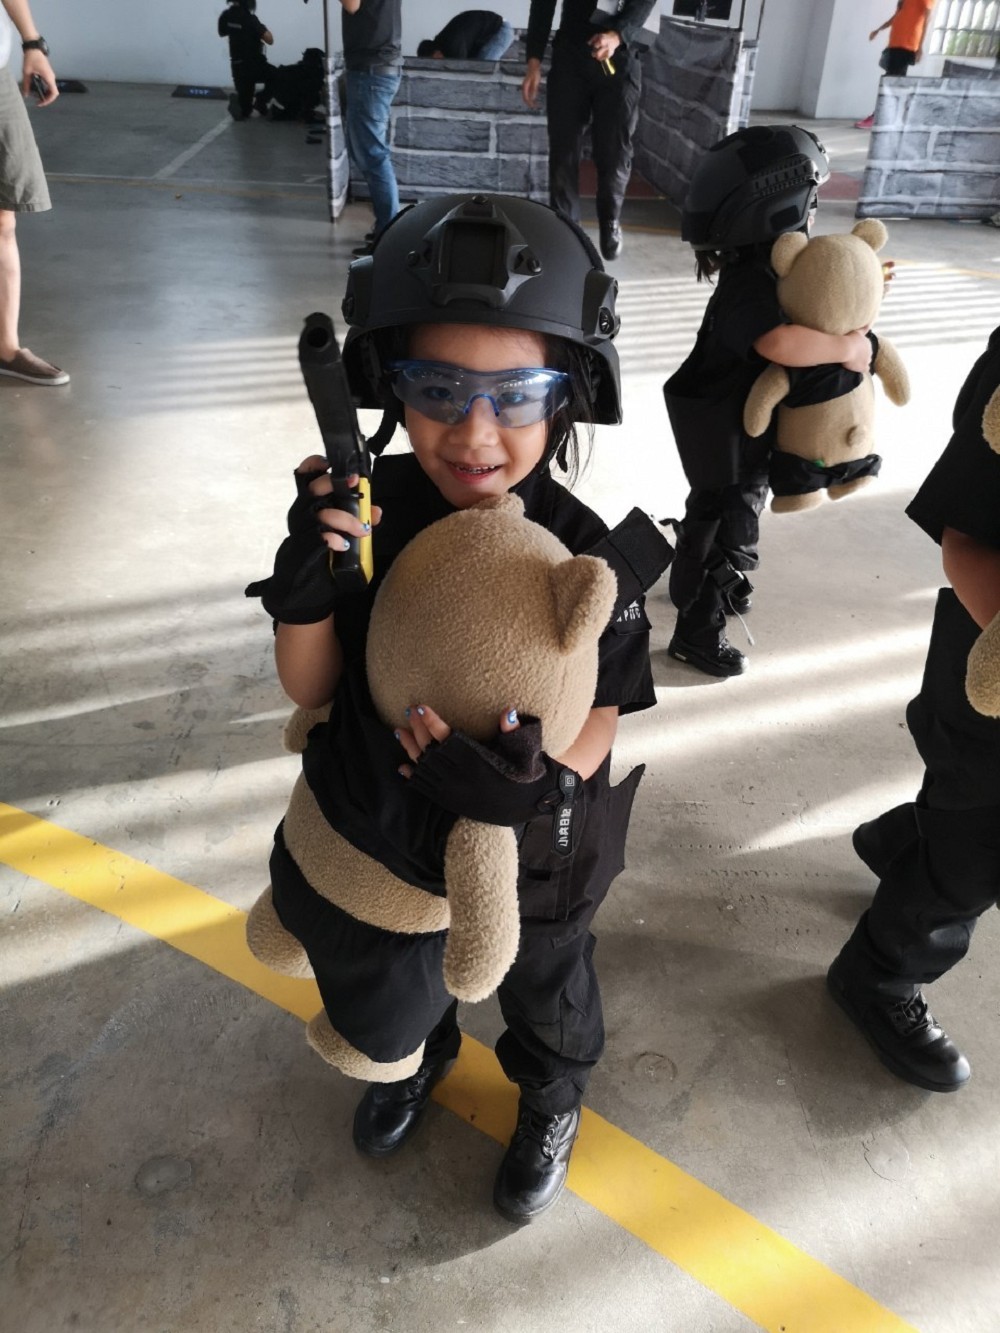 小兵日記兒童軍事體驗營 小孩角色扮演 小孩cosplay 小孩 憲兵特勤隊